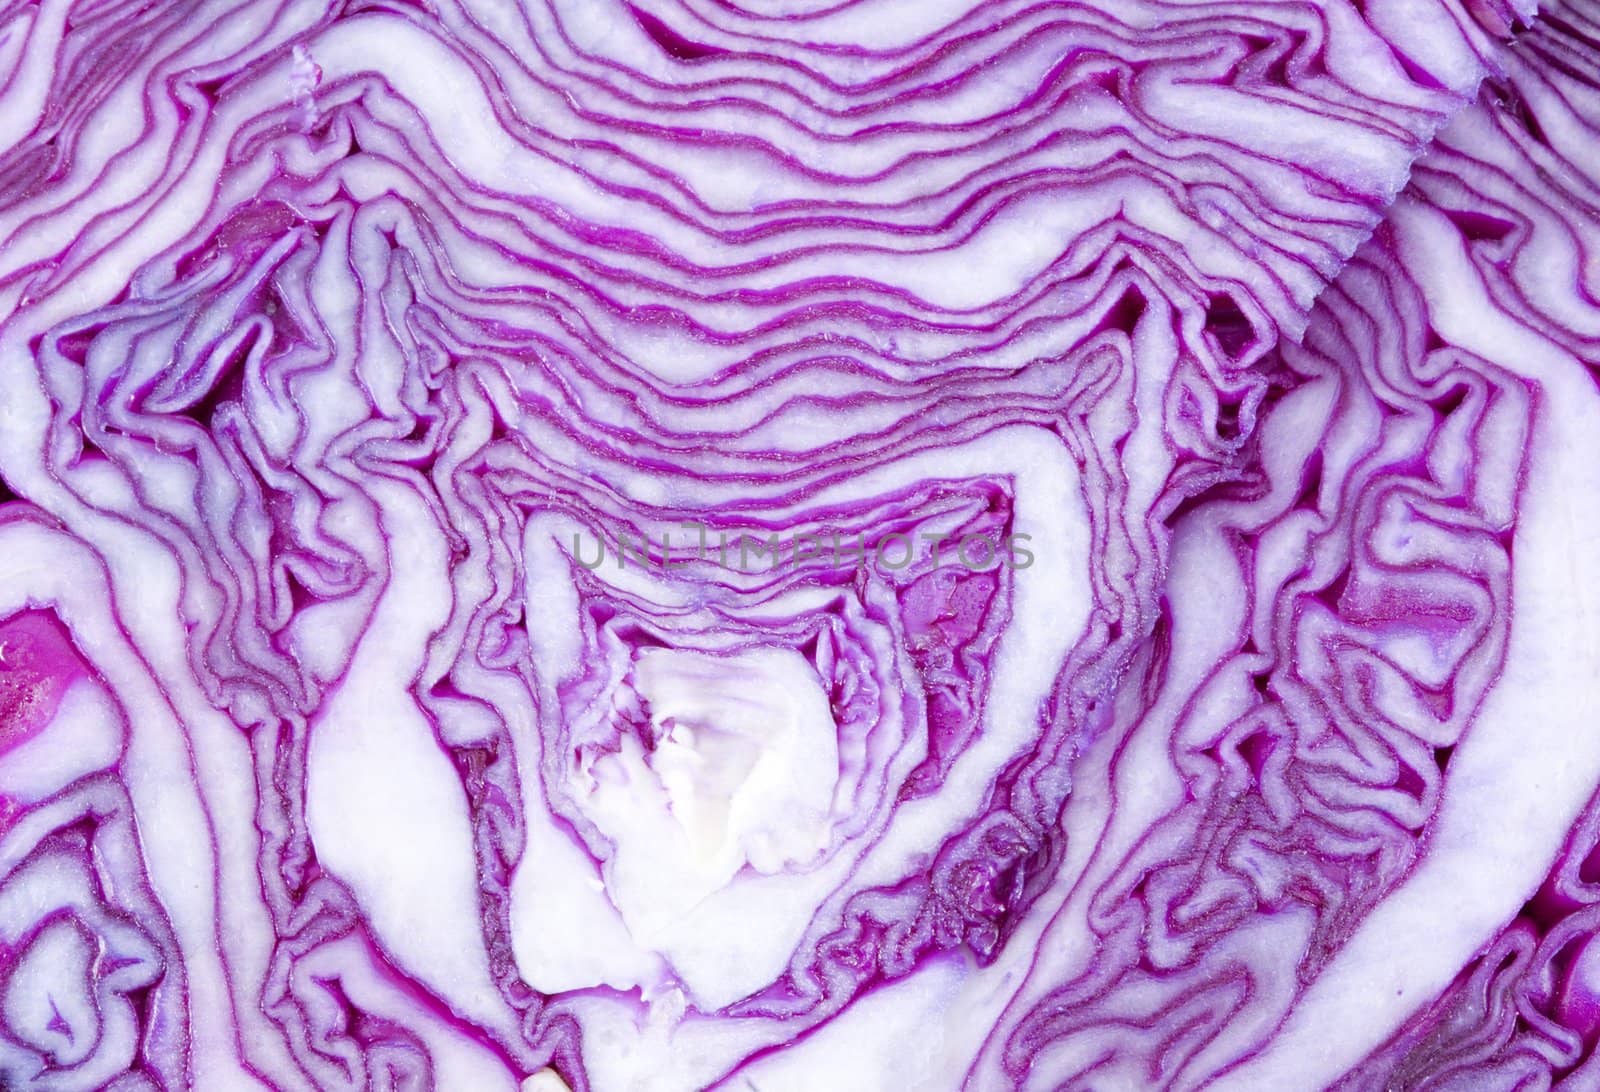 Cabbage Texture by werg